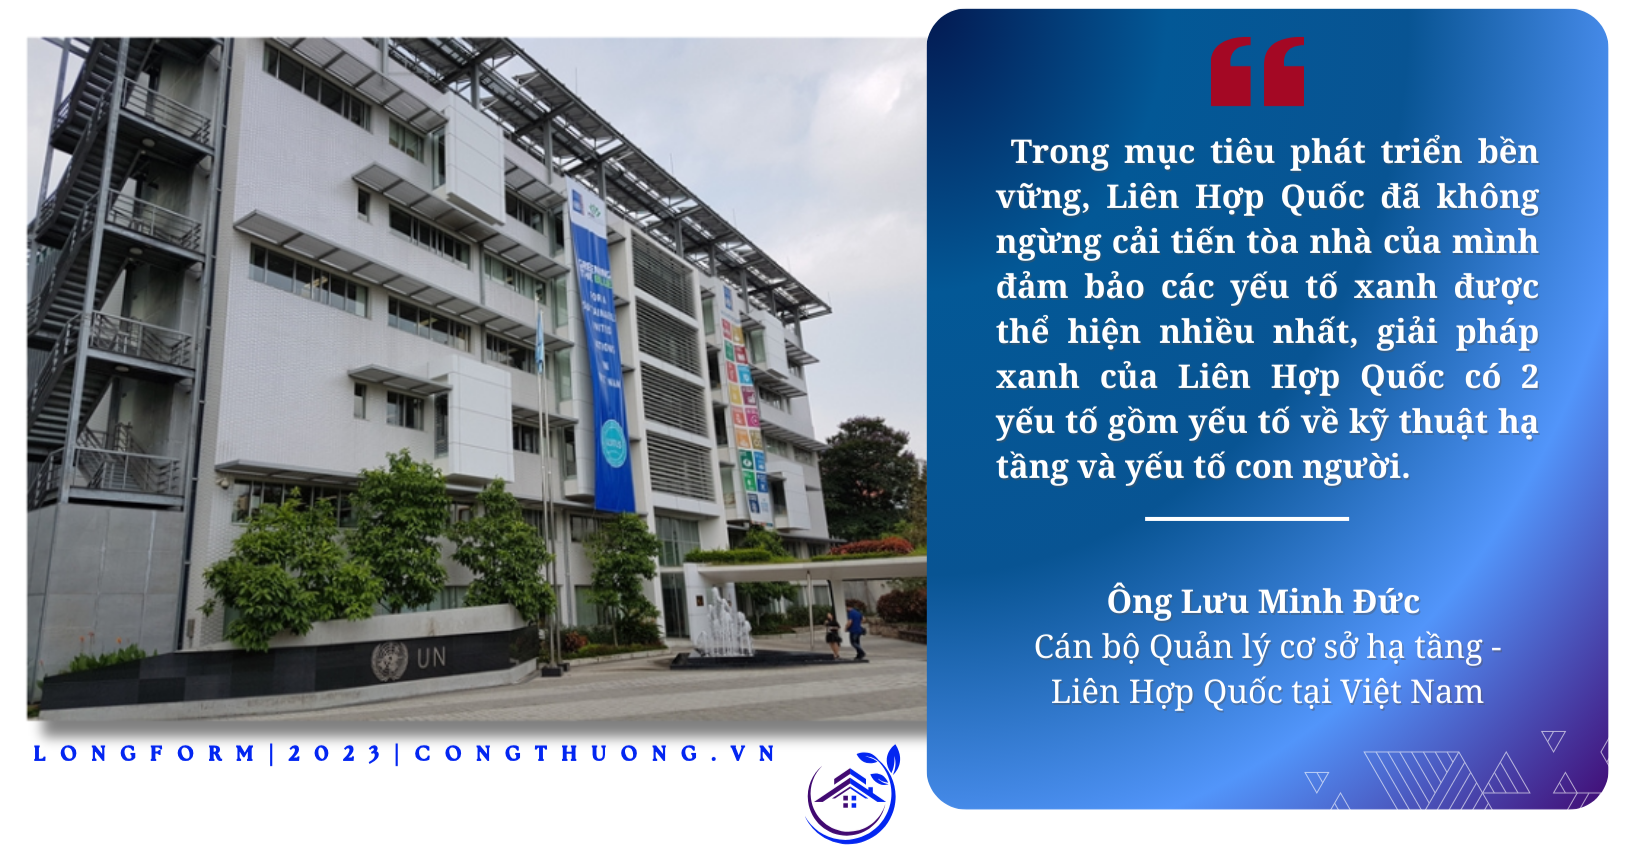 Longform | Bài 2: Hiệu quả từ những tòa nhà Xanh ở Hà Nội